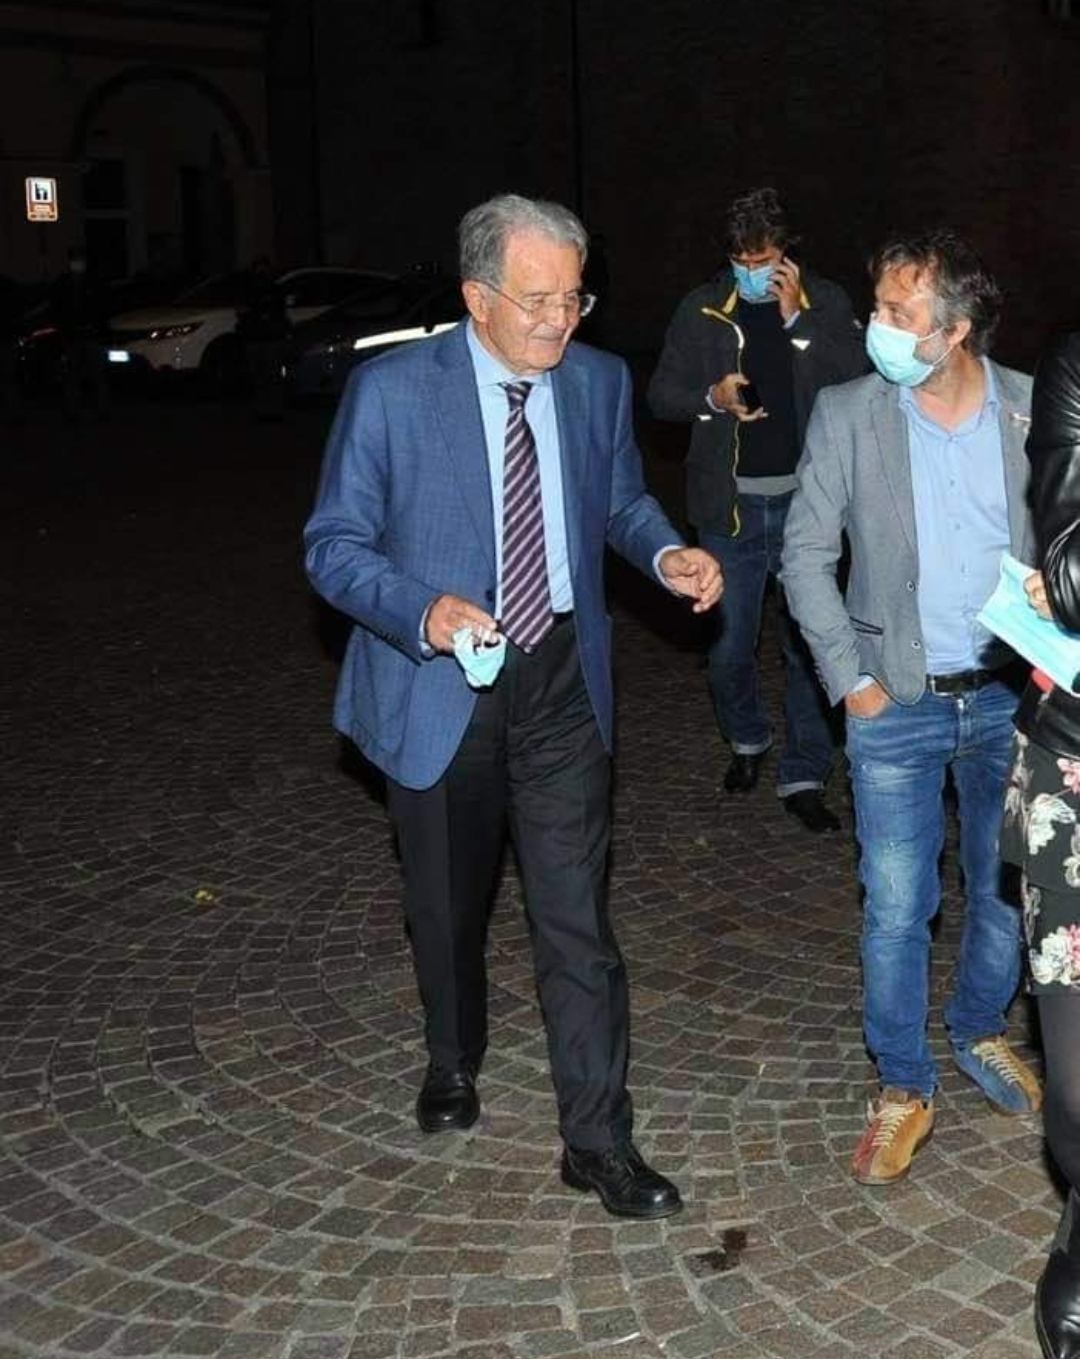 Alex Corlazzoli fa outing politico: Romano Prodi ha guidato l’ultimo governo serio che abbiamo avuto. Il professore è un vero statista